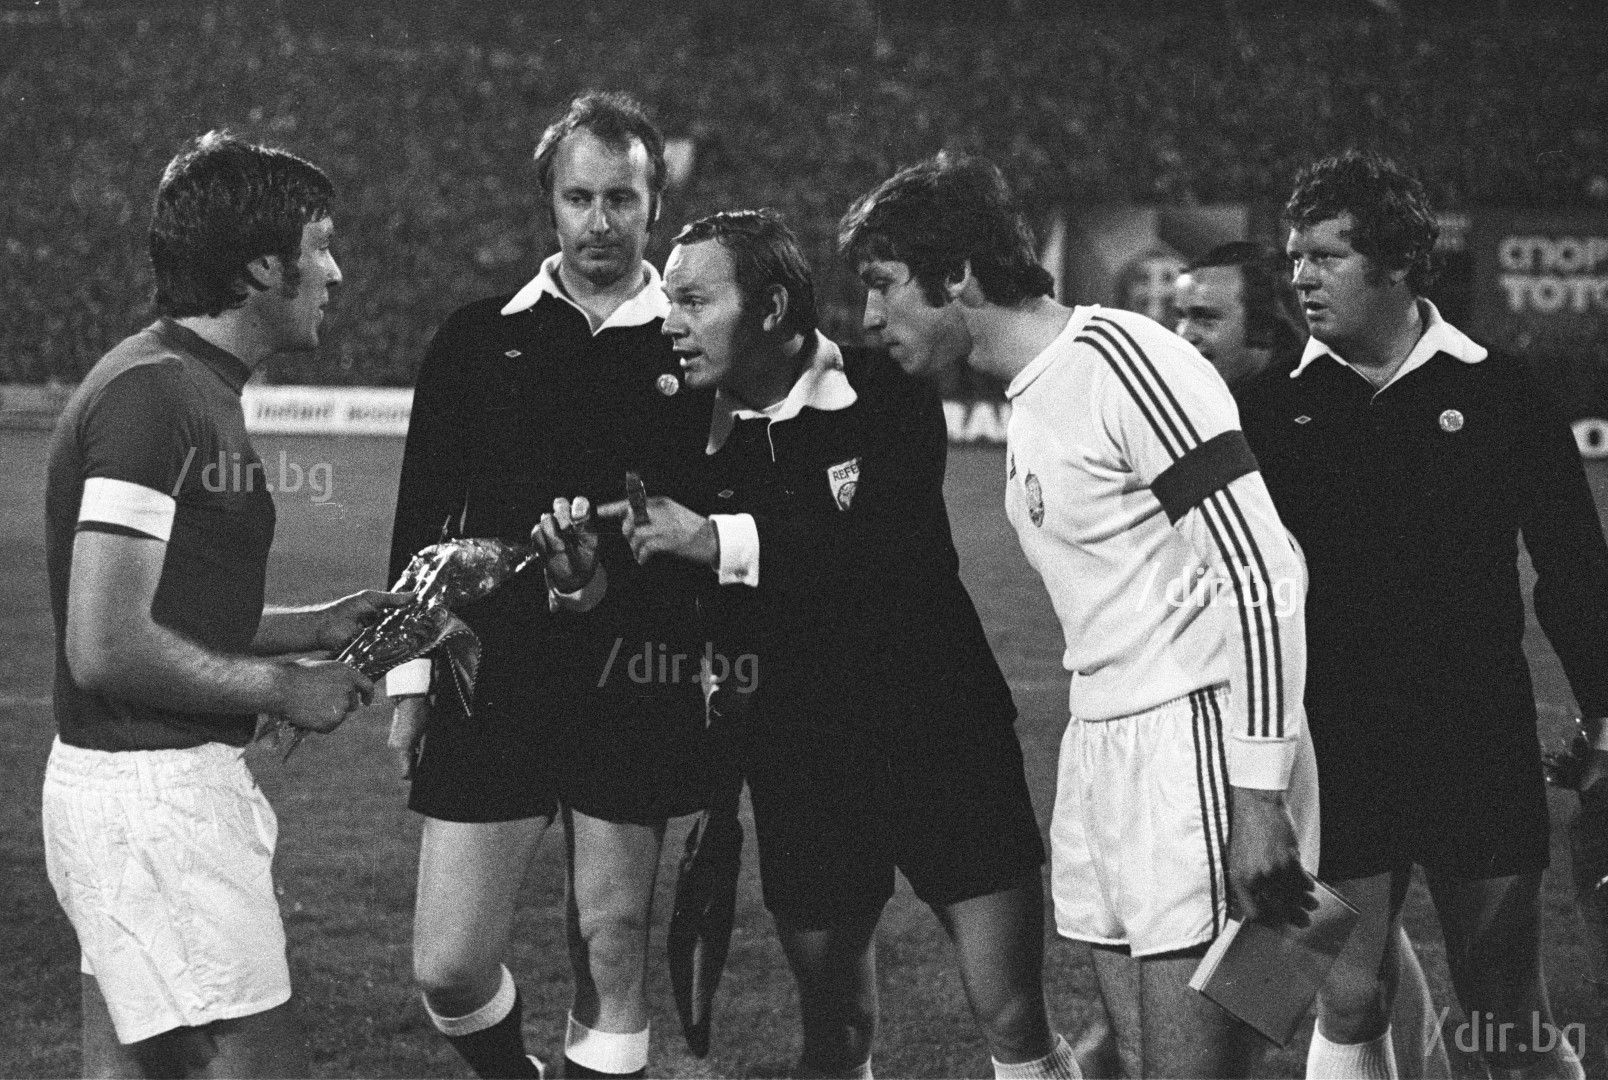 Капитаните Емлин Хюз и Христо Бонев преди мача през 1974 г.